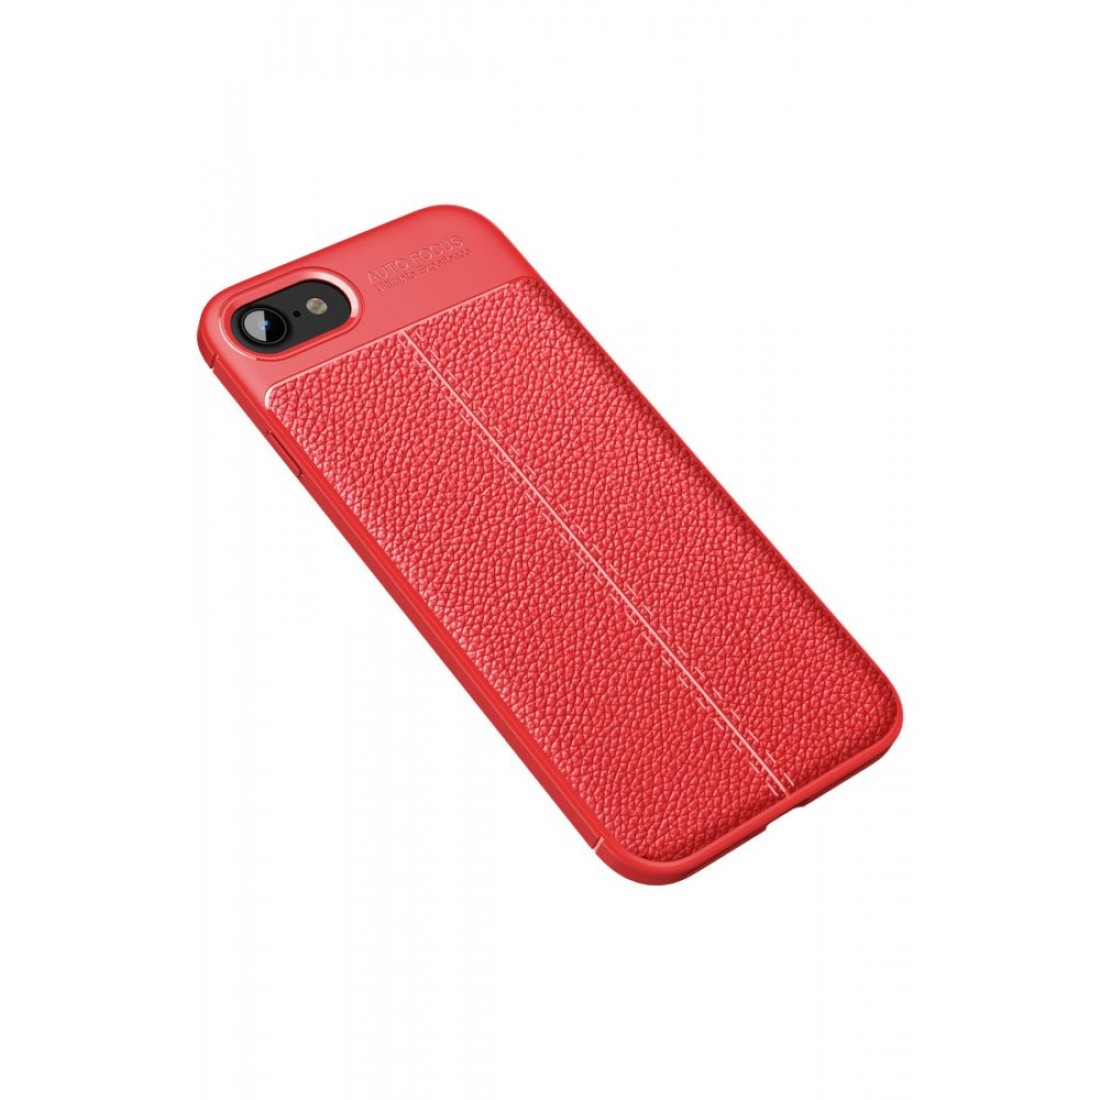 Apple iPhone SE 2020 Kılıf Focus Derili Silikon - Kırmızı